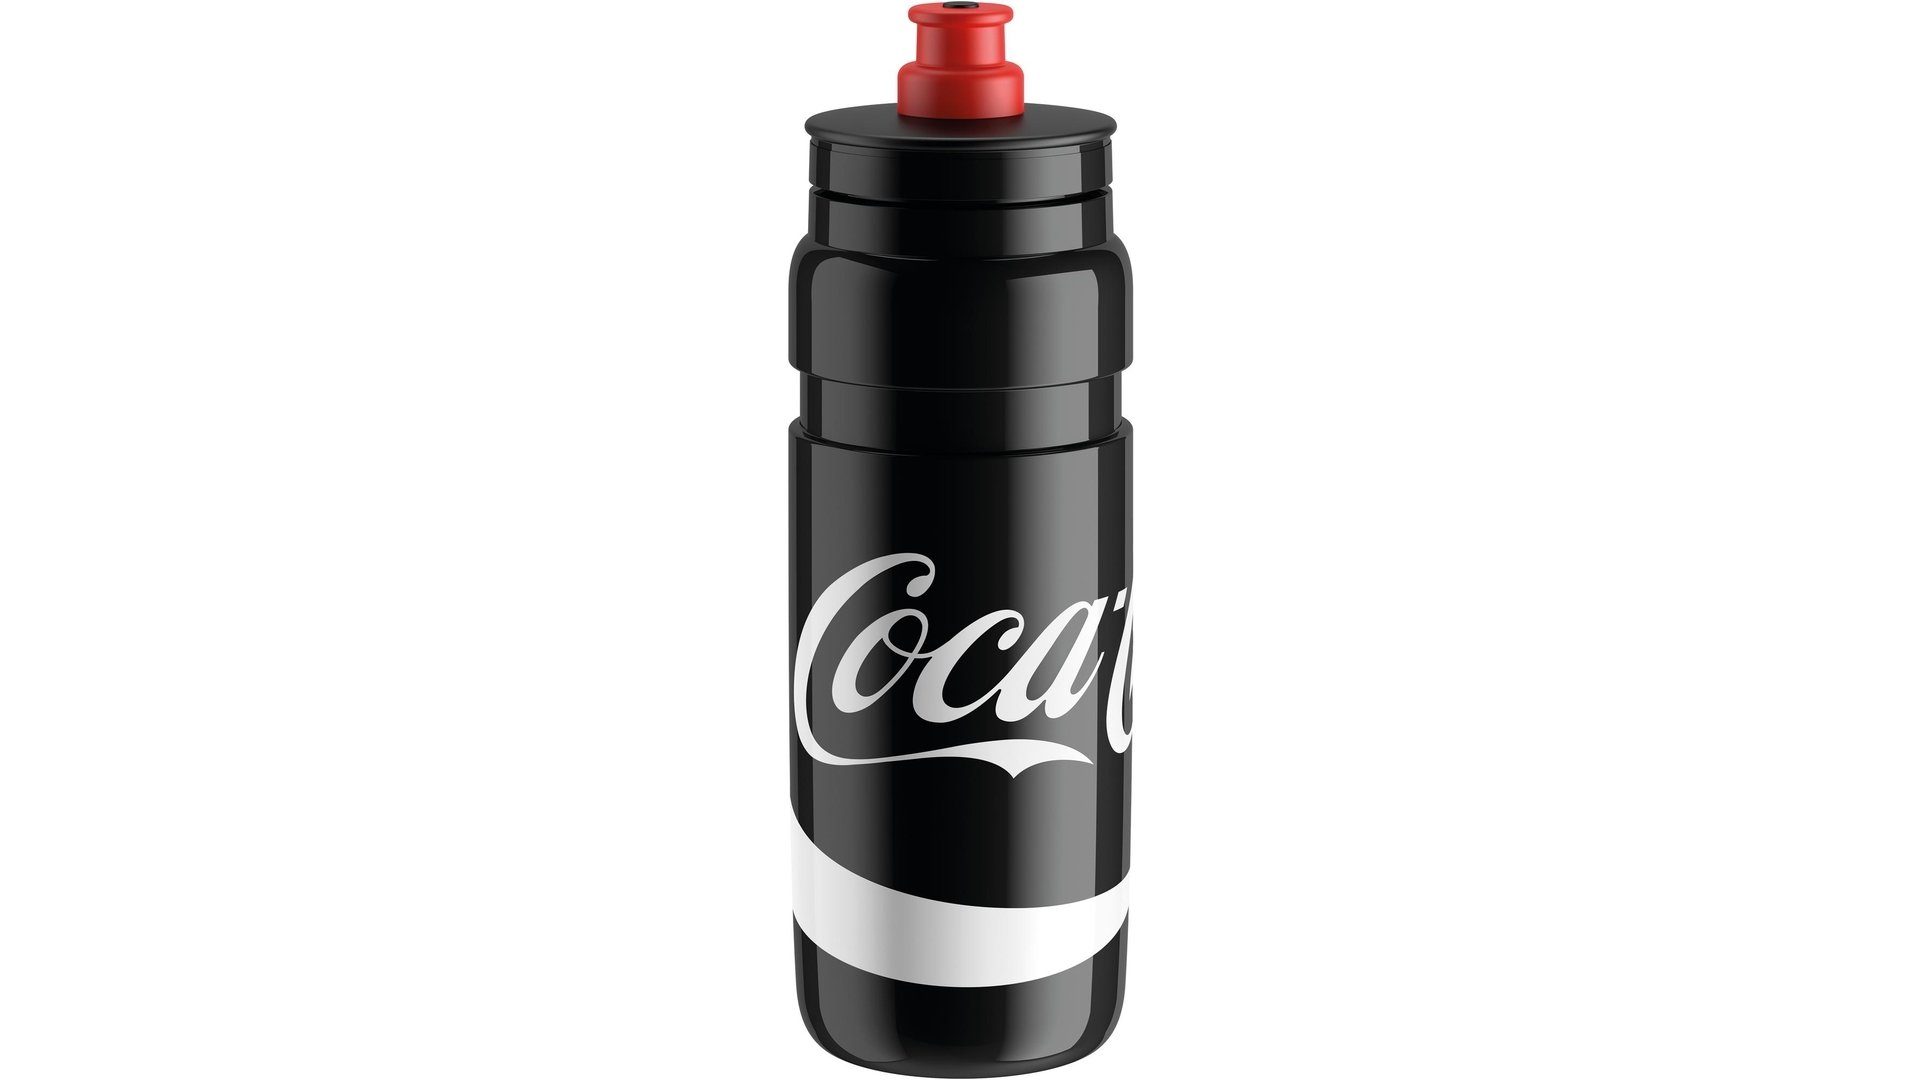 Elite Trinkflasche Elite Fly Coca Trinkflasche schwarz 750ml, Cola